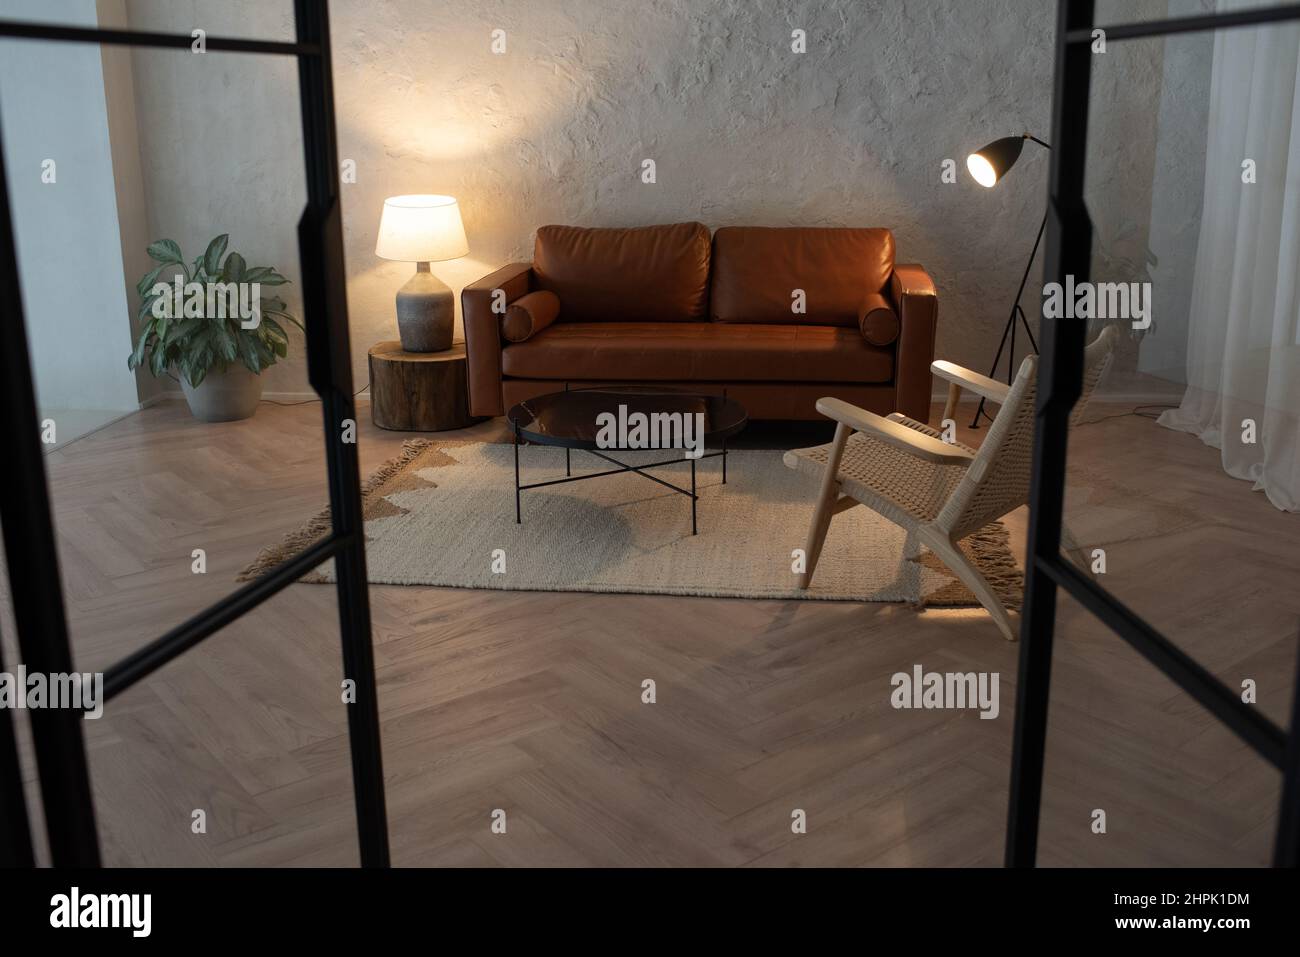 Grande chambre de luxueux appartement avec canapé en cuir debout par mur au centre entouré d'une petite table, fauteuil, deux lampes et plante verte Banque D'Images